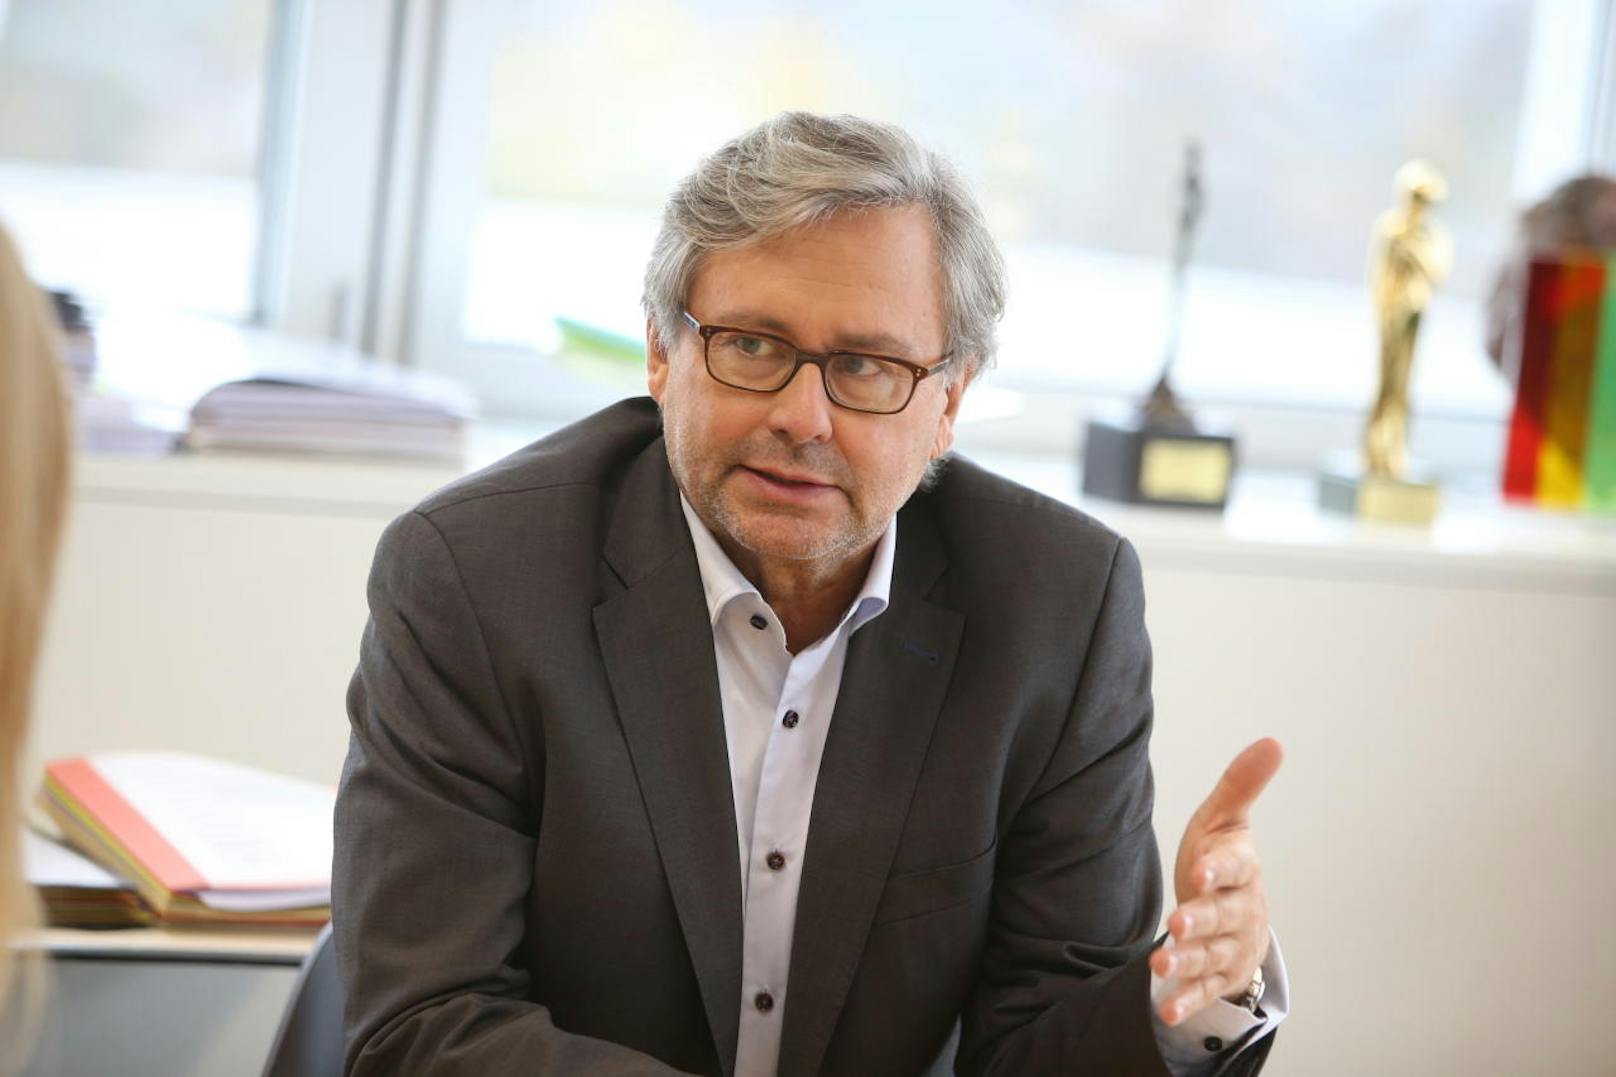 ORF-Generaldirektor<b>Alexander Wrabetz</b> äußert sich im "Heute"-Interview zu den heftigen Attacken, denen der Österreichische Rundfunk und seine Mitarbeiter immer wieder ausgesetzt sind.